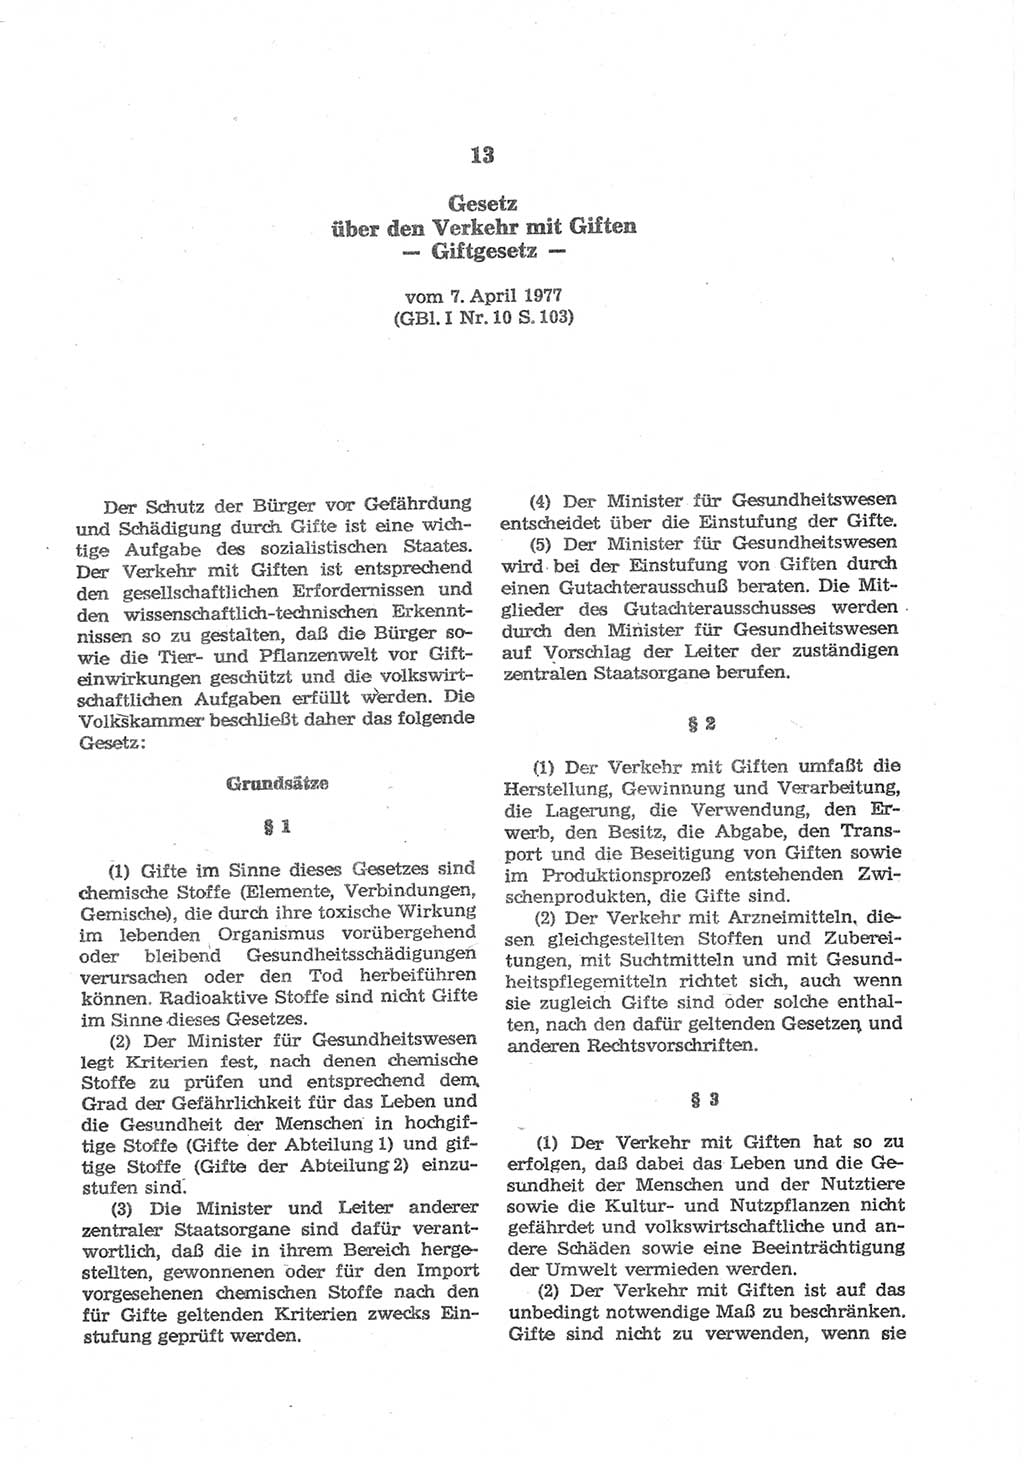 Strafgesetzbuch (StGB) der Deutschen Demokratischen Republik (DDR) und angrenzende Gesetze und Bestimmungen 1977, Seite 231 (StGB DDR Ges. Best. 1977, S. 231)